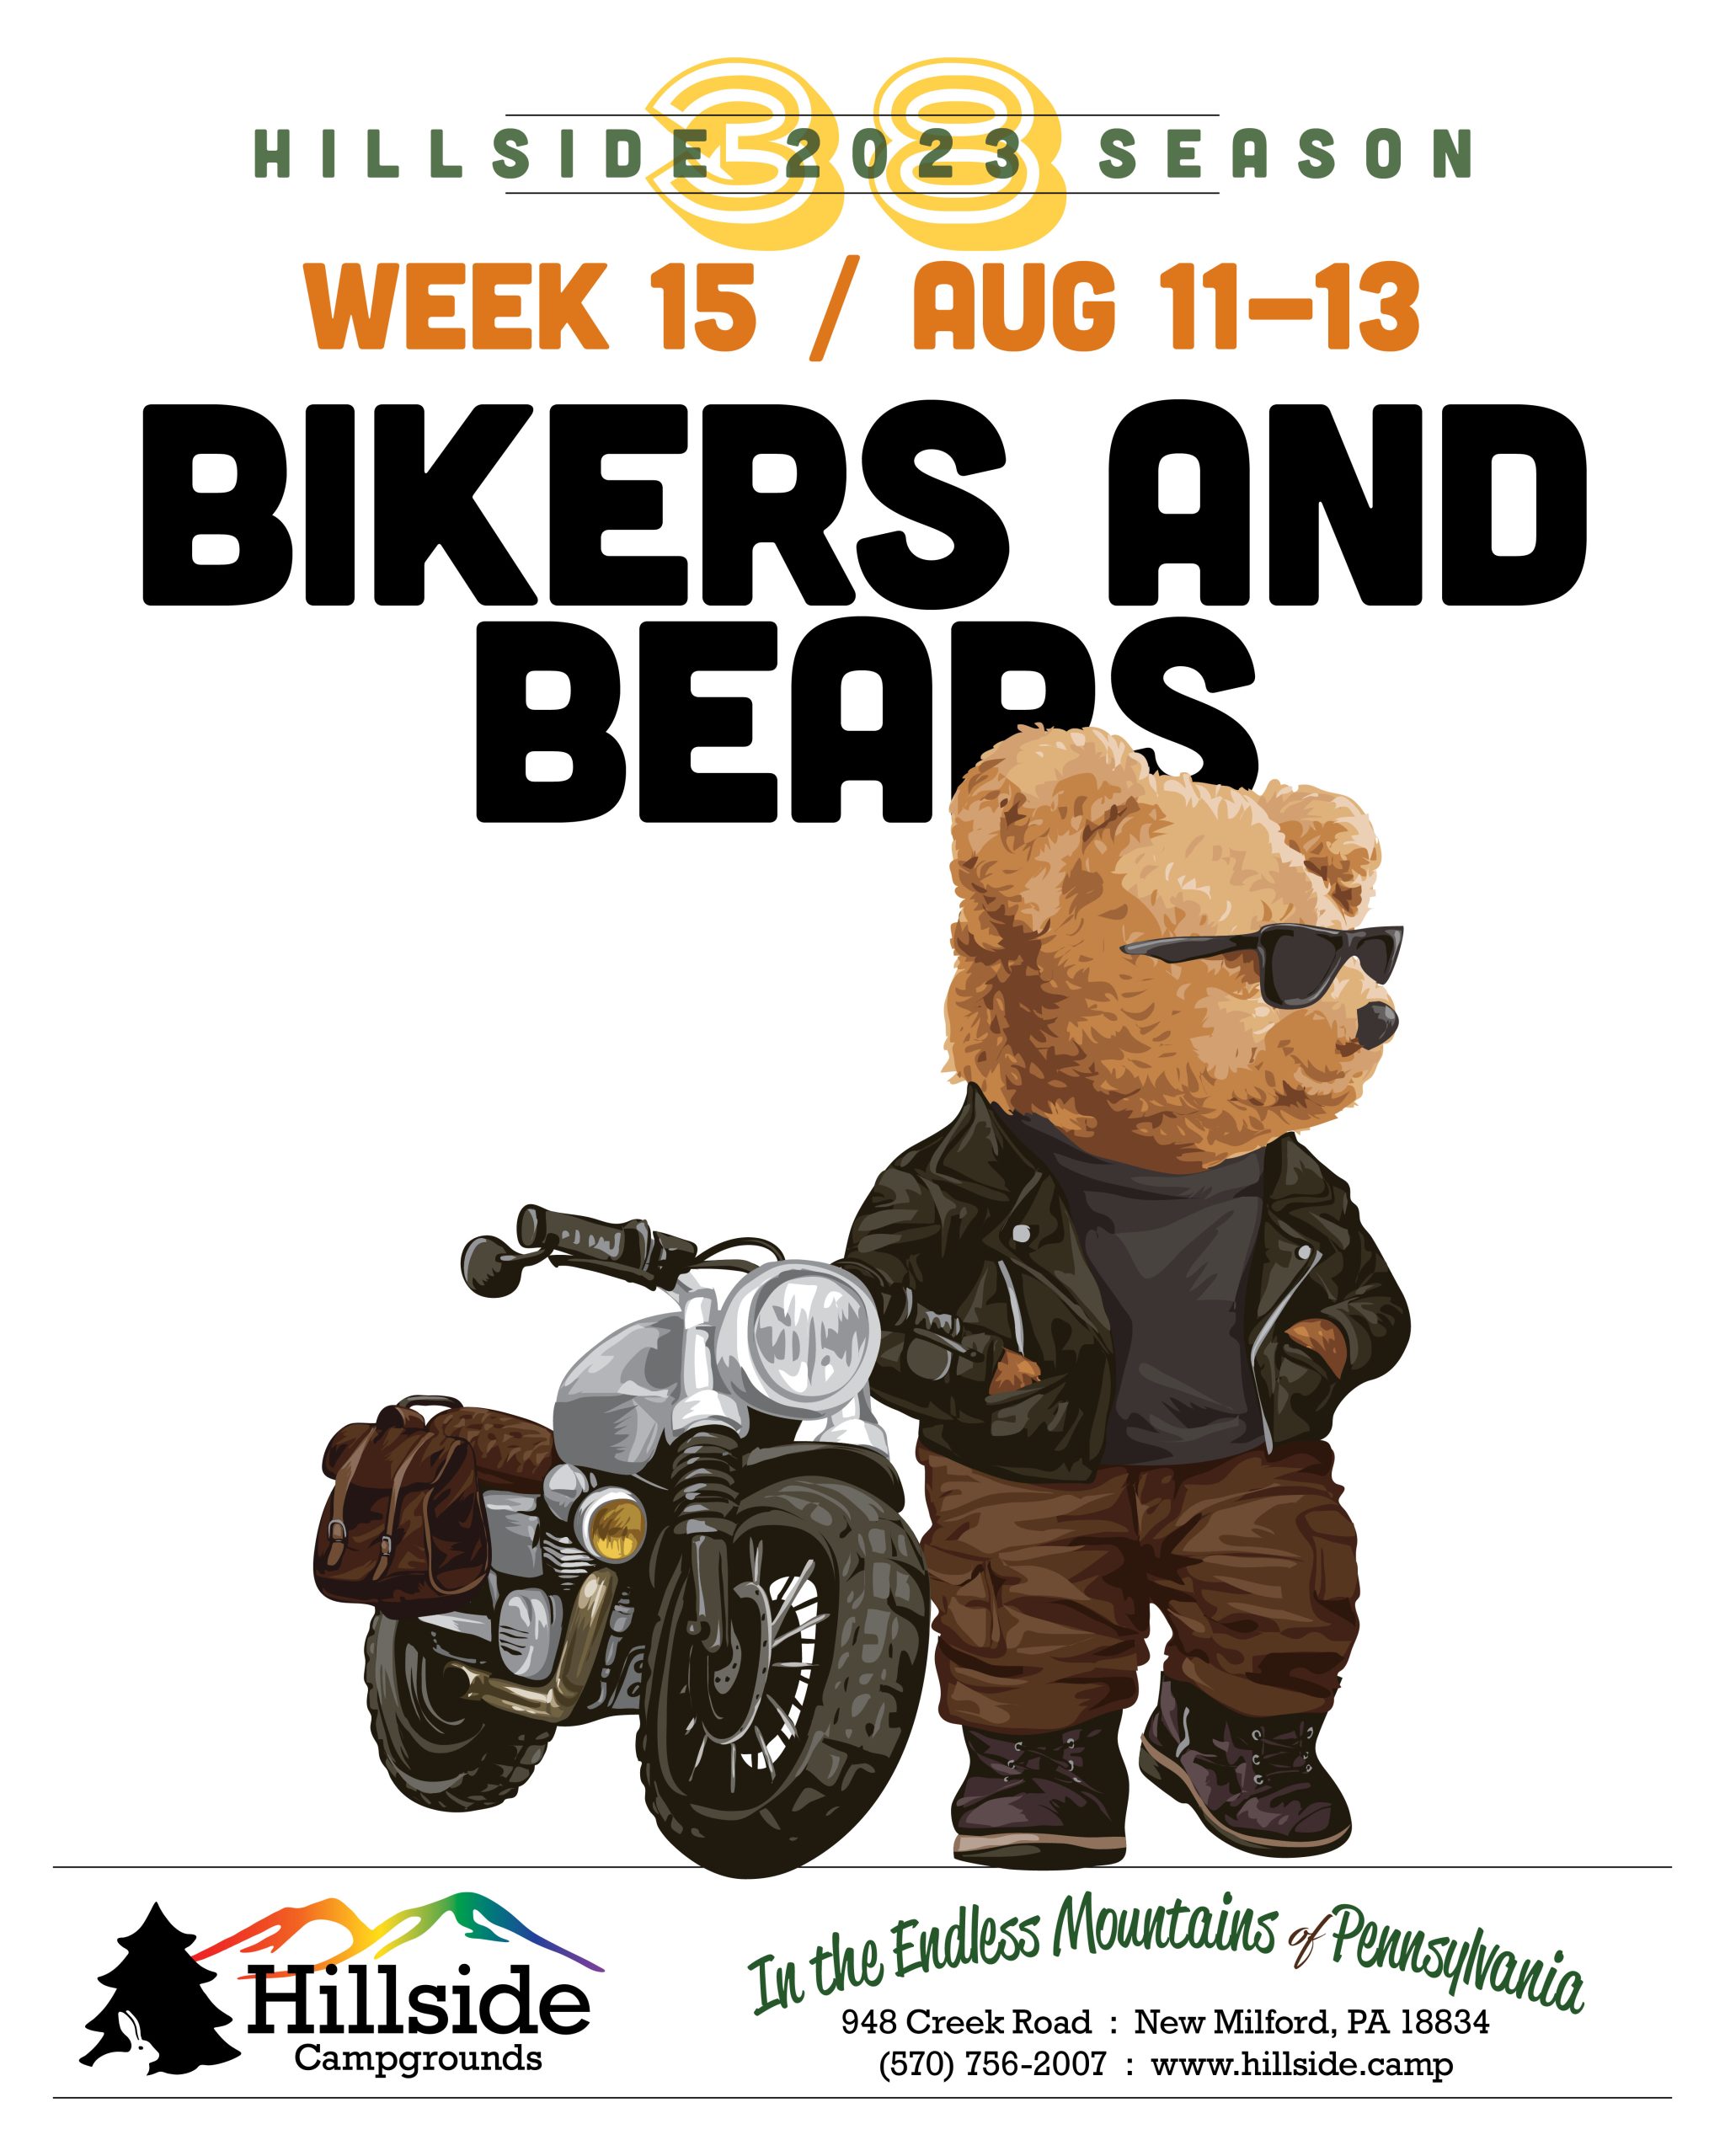 2023 weekend 15 bears bikers